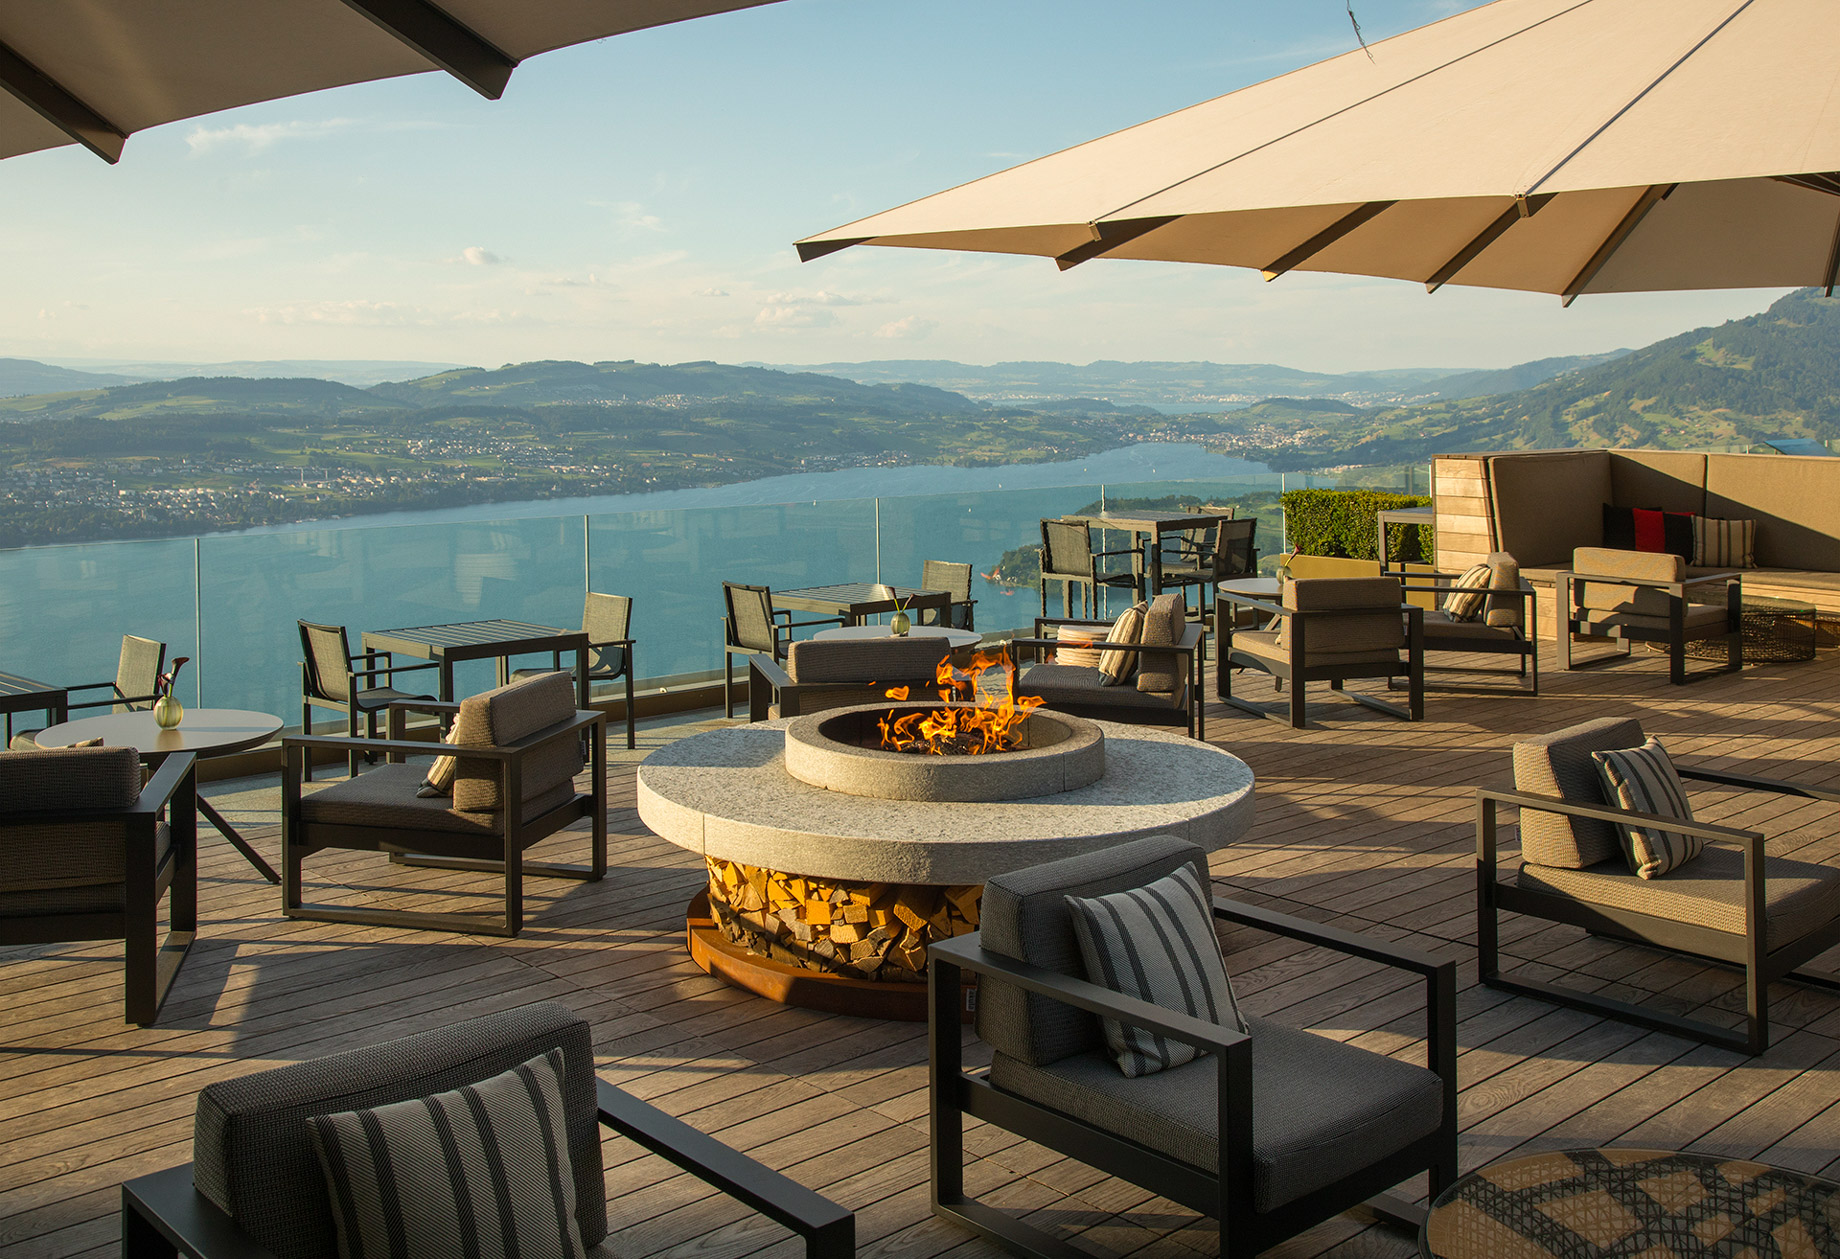 Burgenstock Hotel & Alpine Spa – Obburgen, Switzerland – Spices Kitchen & Terrace Restaurant Terrace View